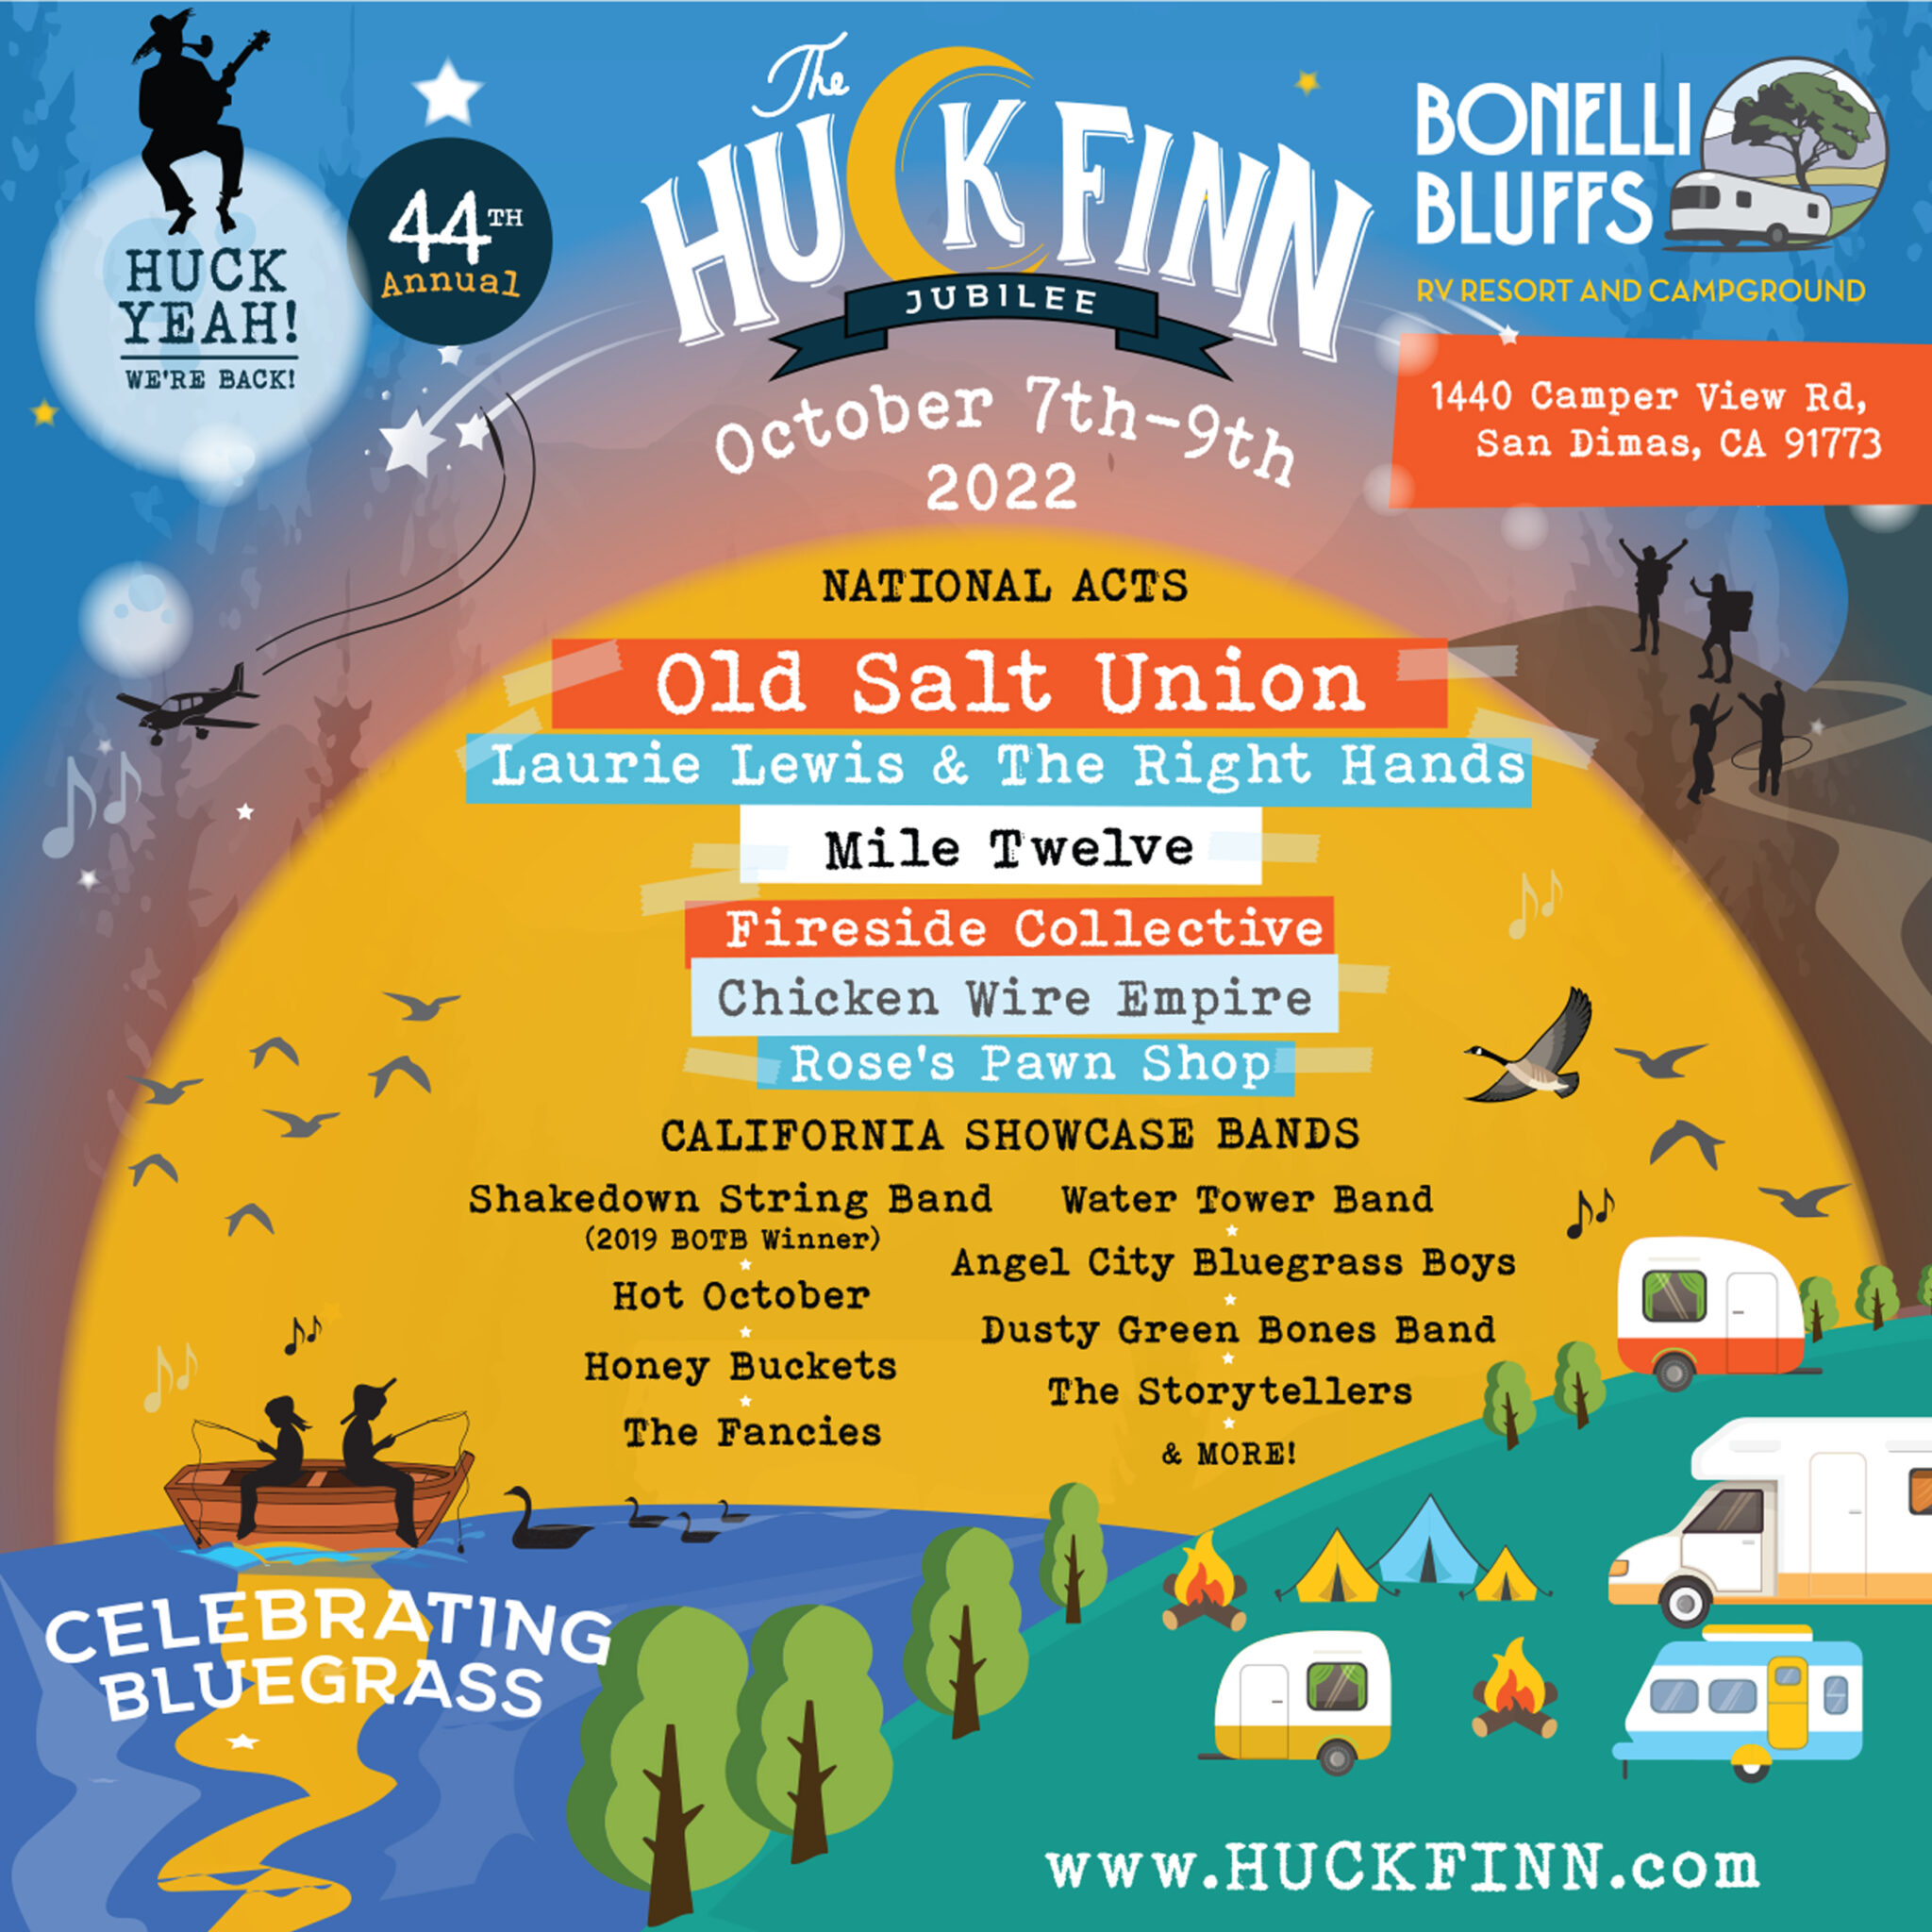 Huck Finn Jubilee Promo Code, Discount Tickets, Weekend, Camping, Bluegrass, DJ, San Dimas CA, Bonelli Bluffs, Bands